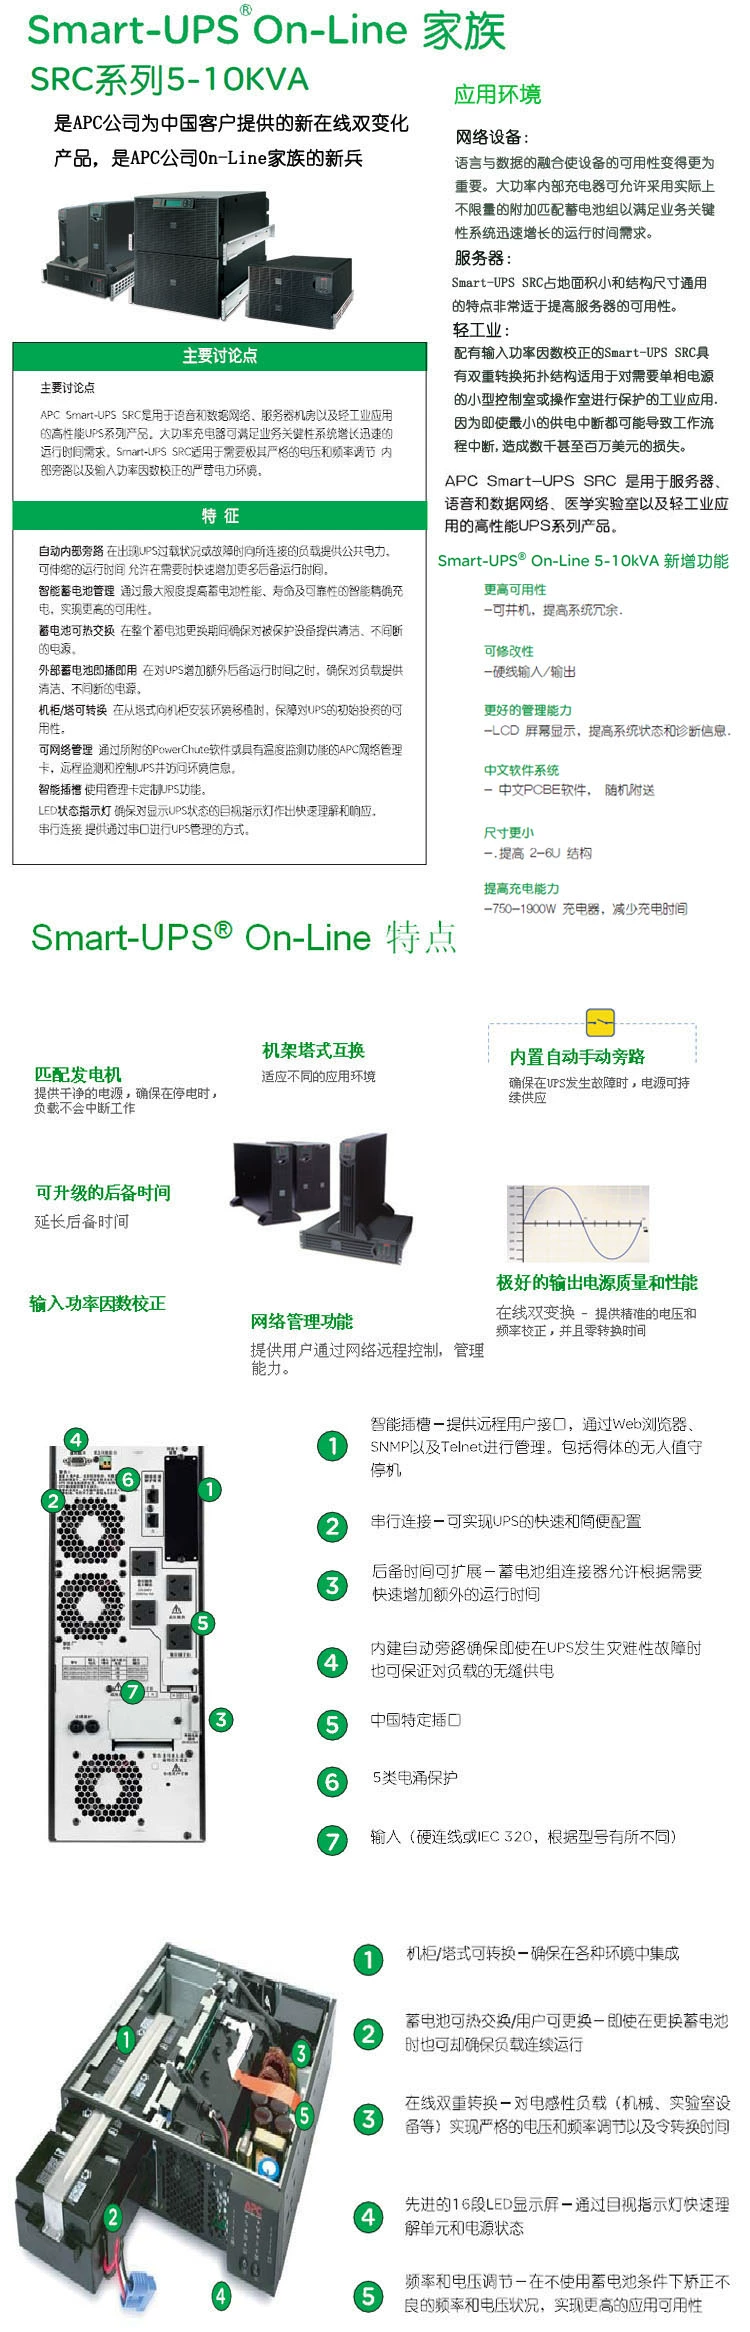 Smart-ups RC6000 APC ups电源型号SRC6000UXICH参数，图片,报价 apcups电源,apc ups电源,apcups,apc电源,smart-ups